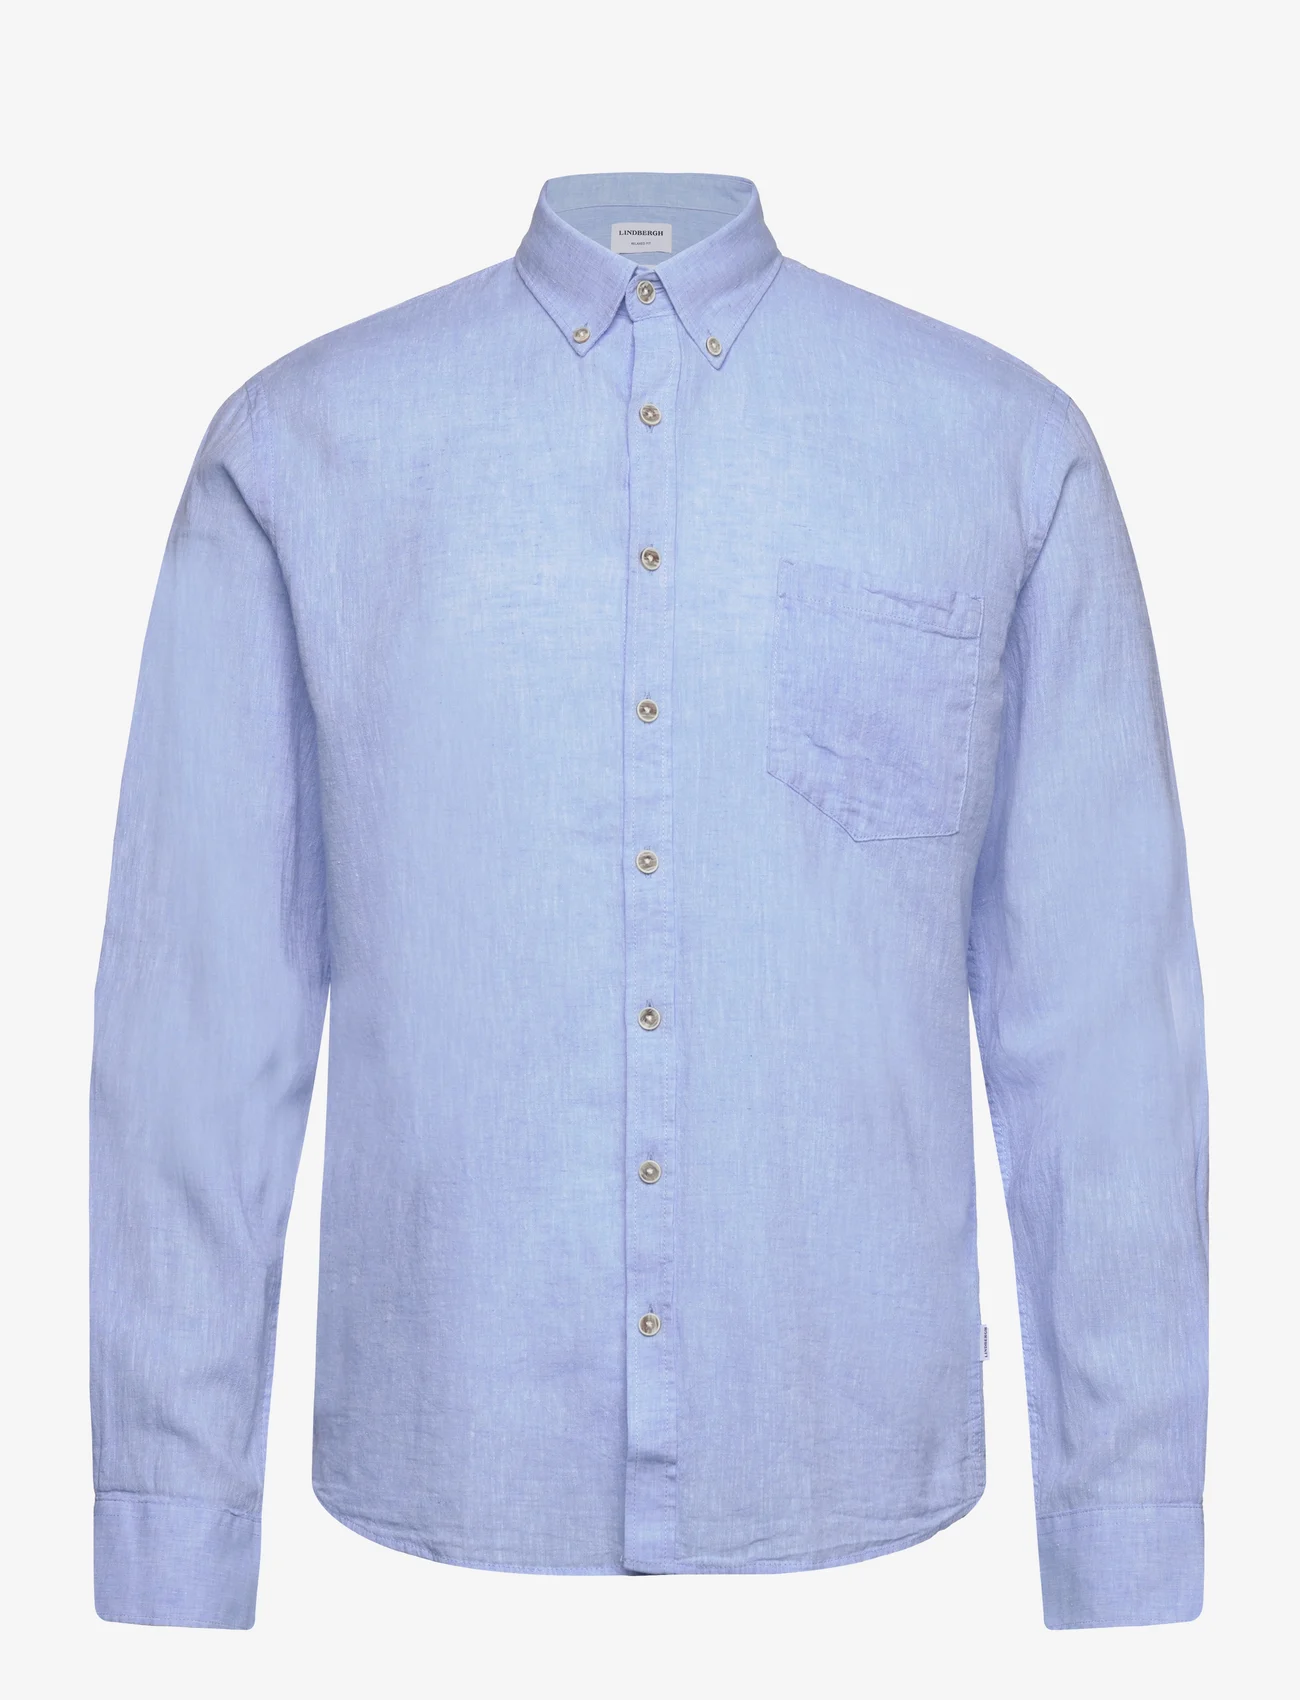 Lindbergh - Cotton/linen shirt L/S - linskjorter - sky blue - 0